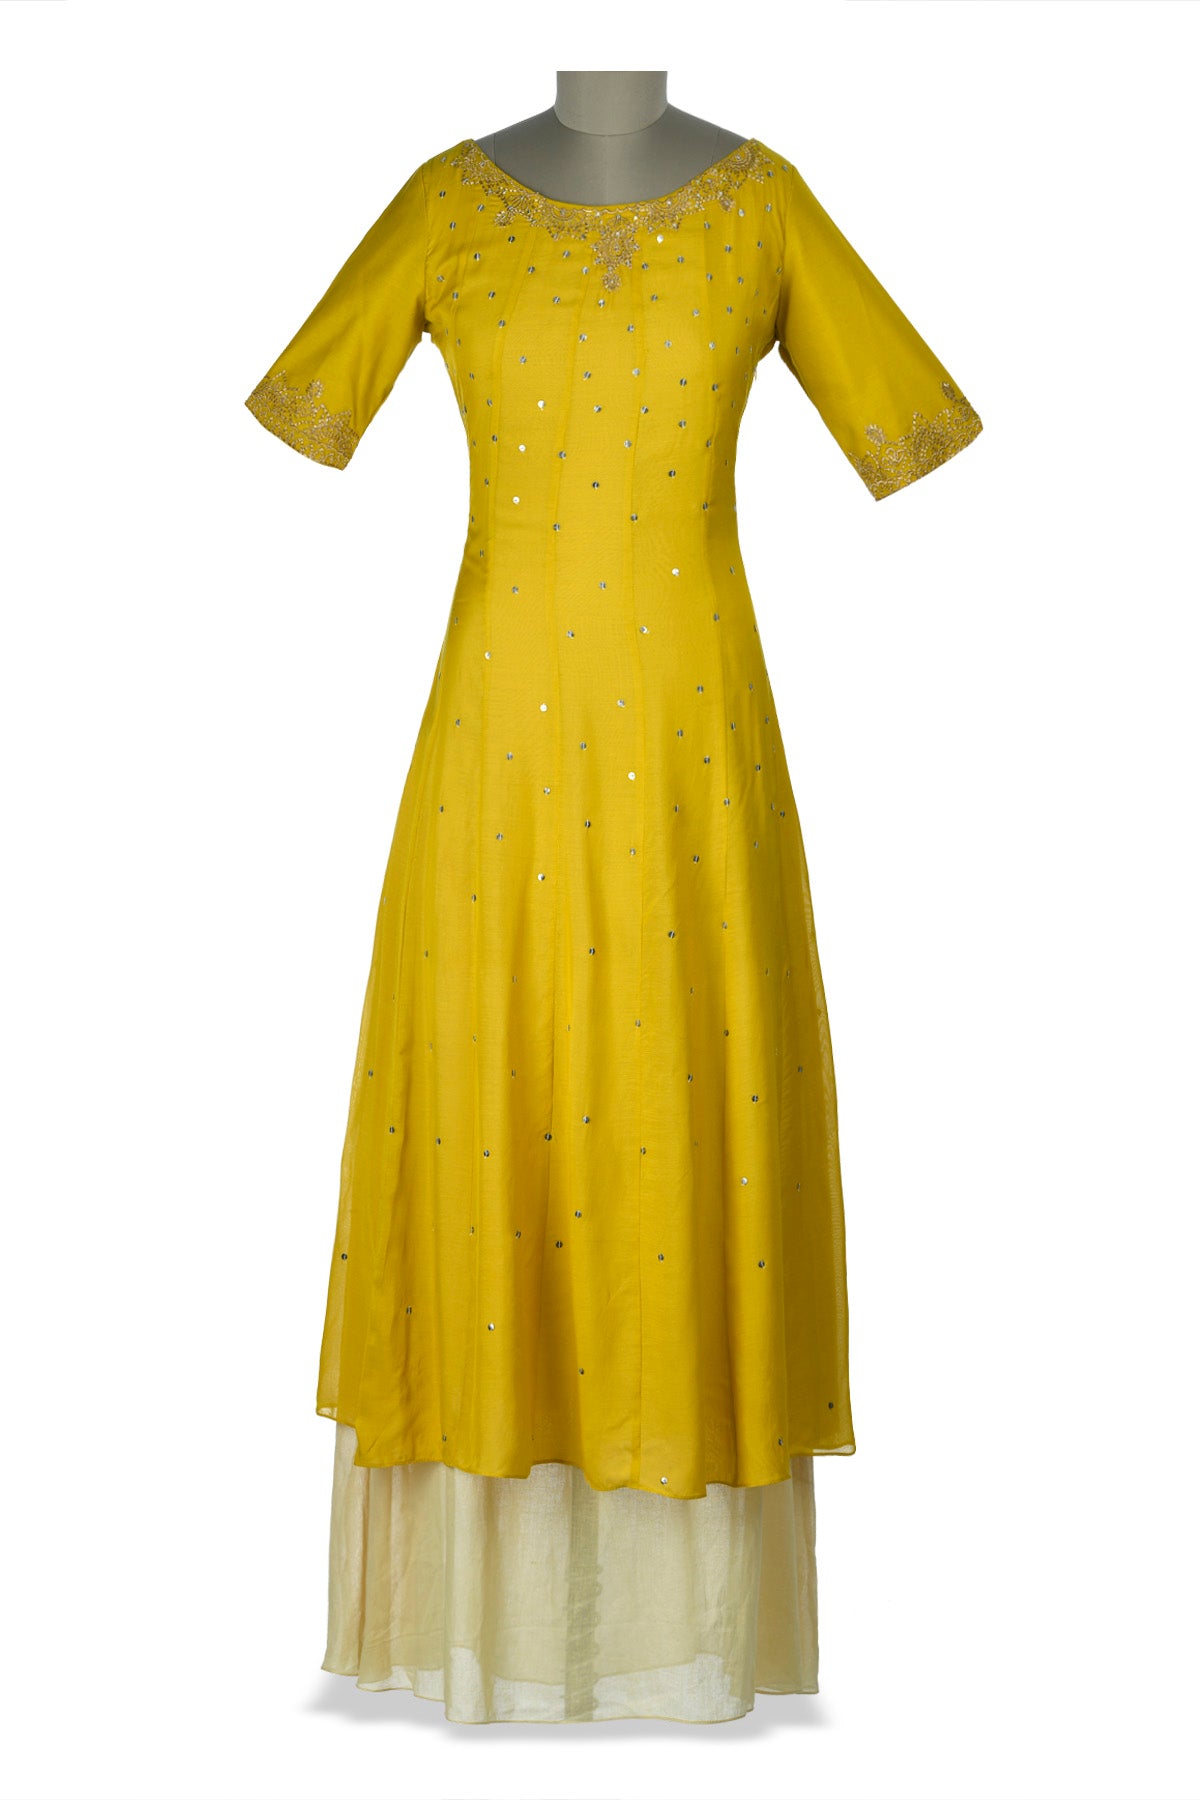 cream yellow dress